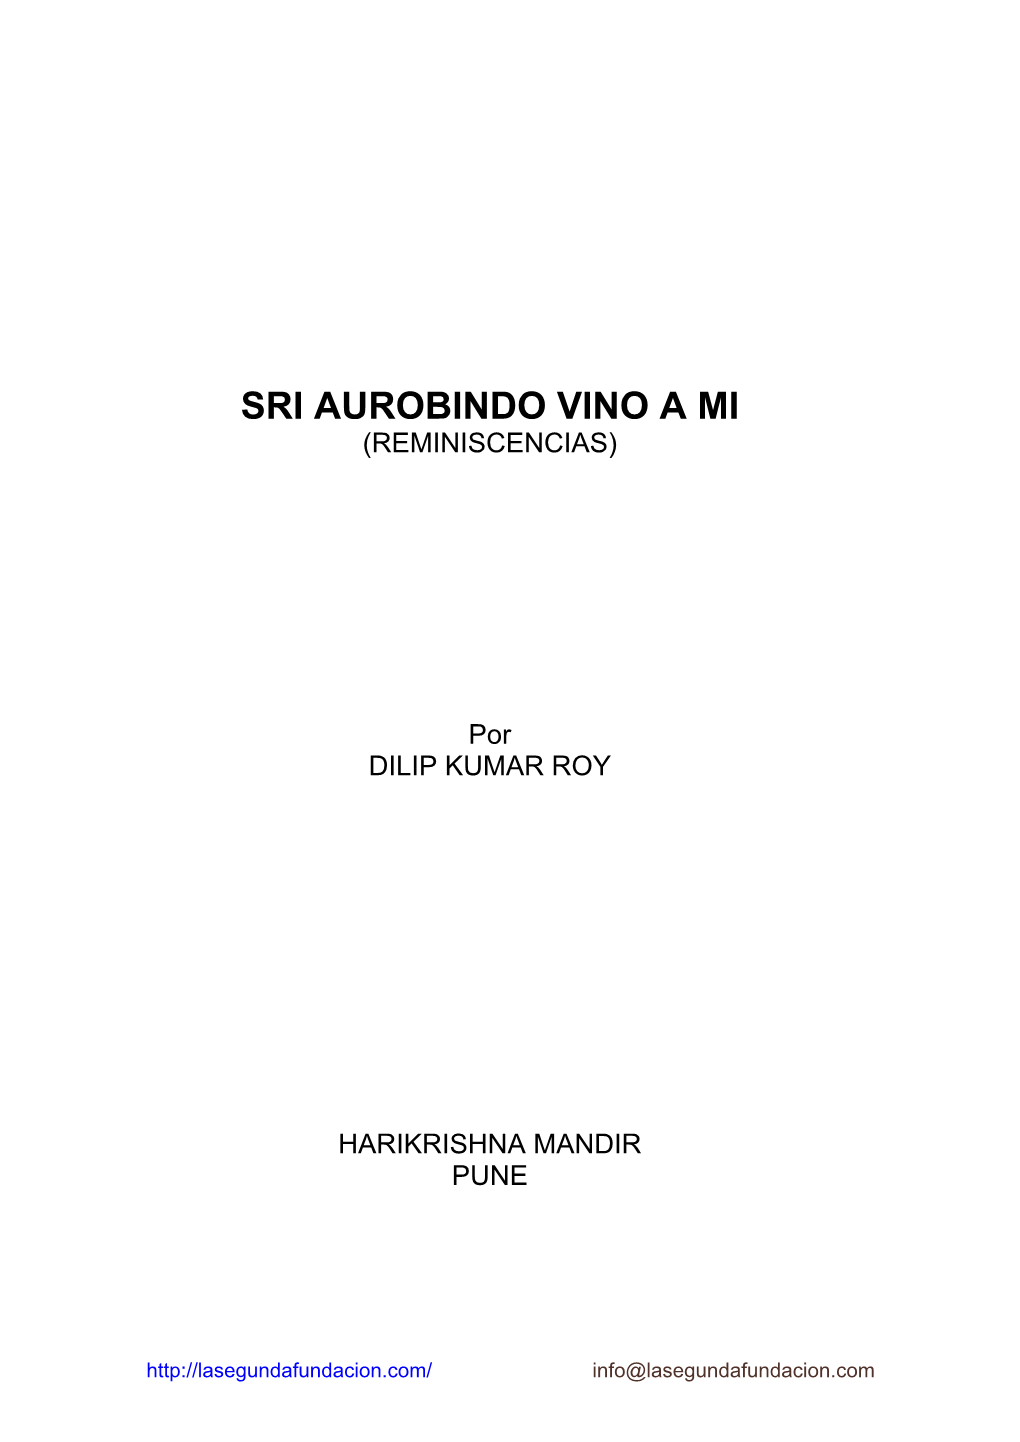 “Sri Aurobindo Vino a Mí” De Dilip Kumar Roy; Una Obra Maestra a Decir De Todos